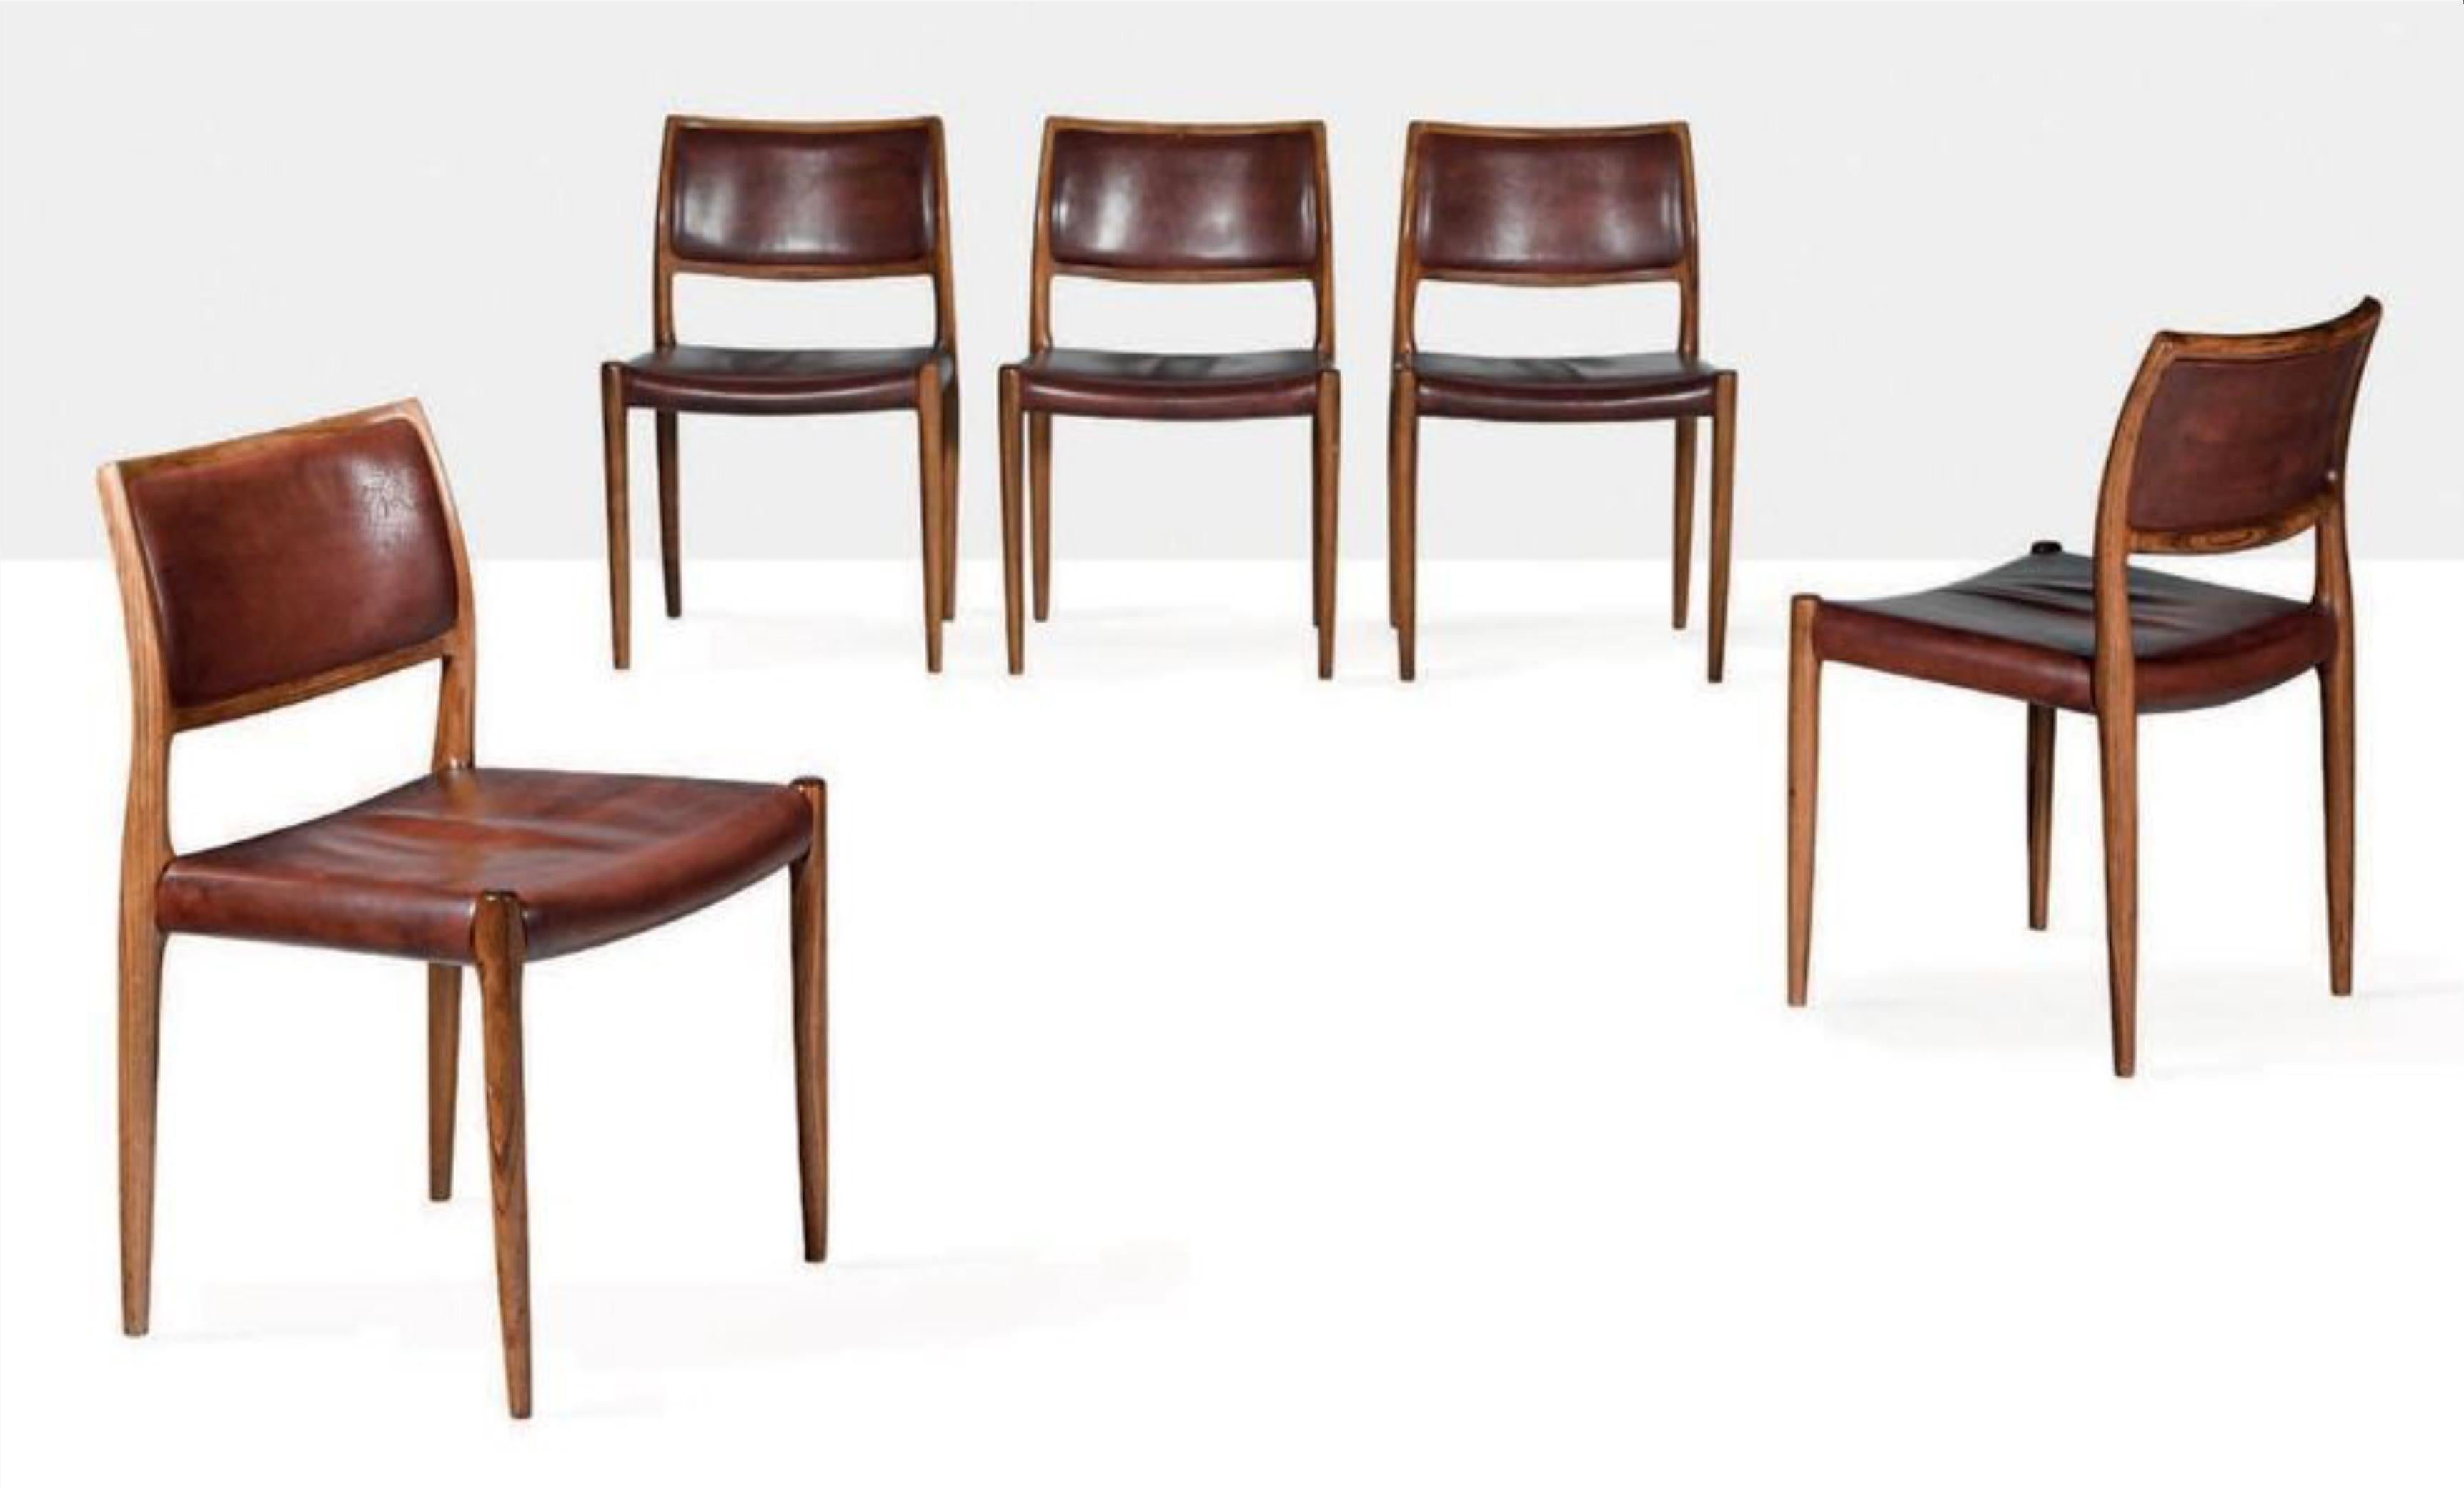 5 Chaises de salle à manger modèle 80 de Niels Otto Møller pour J.L. Møller-Højbjerg, Danemark. Chaises en bois de rose avec revêtement en cuir cognac d'origine Modèle 80, années 1970 Marqué Moller sous l'assise.
5 chaises disponibles Prix pour 1